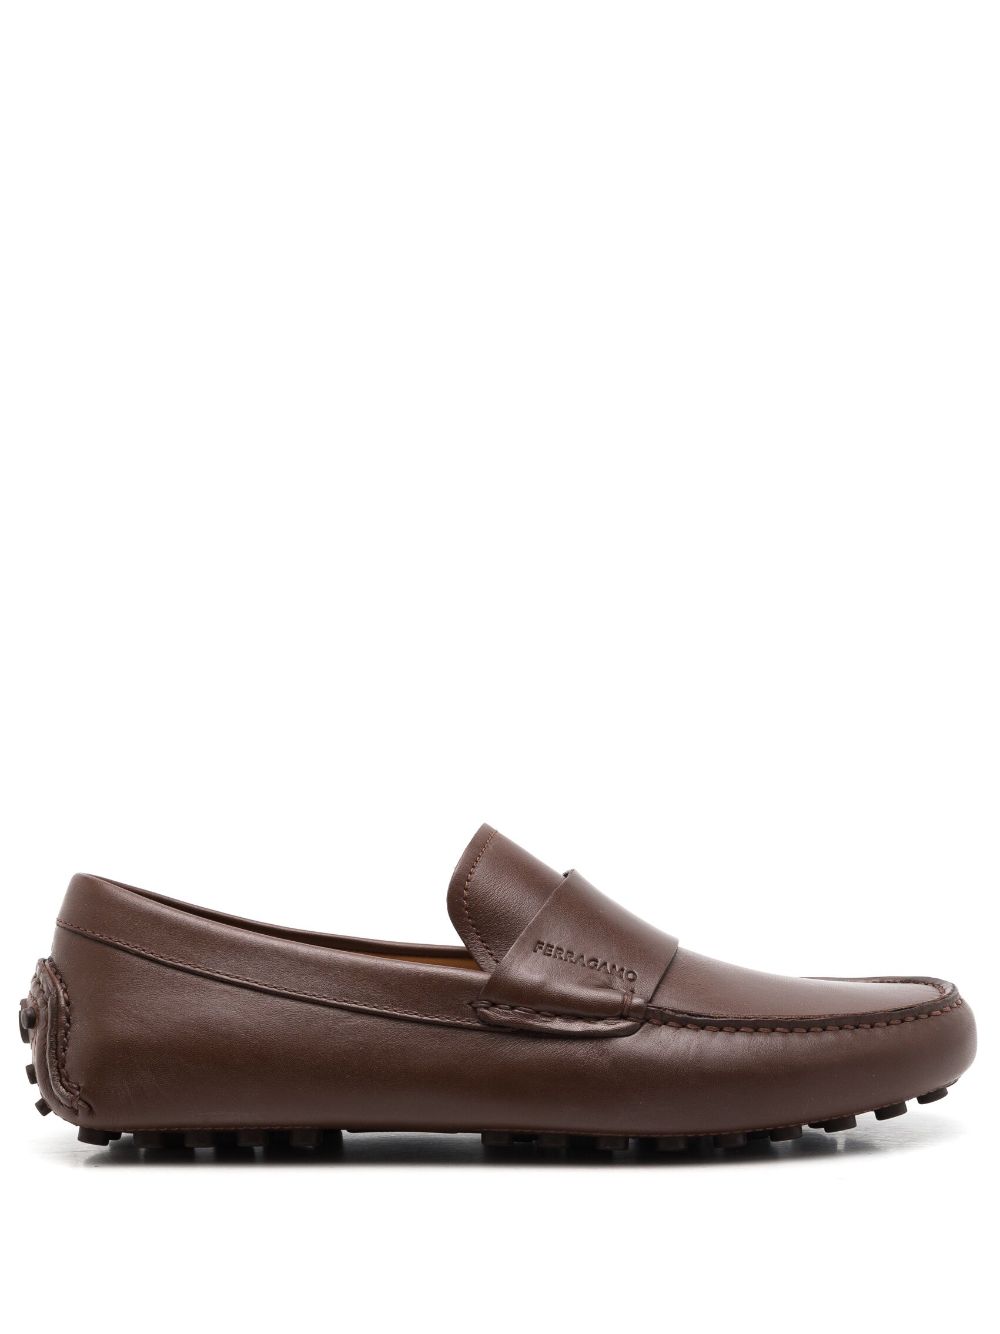 Ferragamo almond-toe leather saddle loafers - Brown von Ferragamo